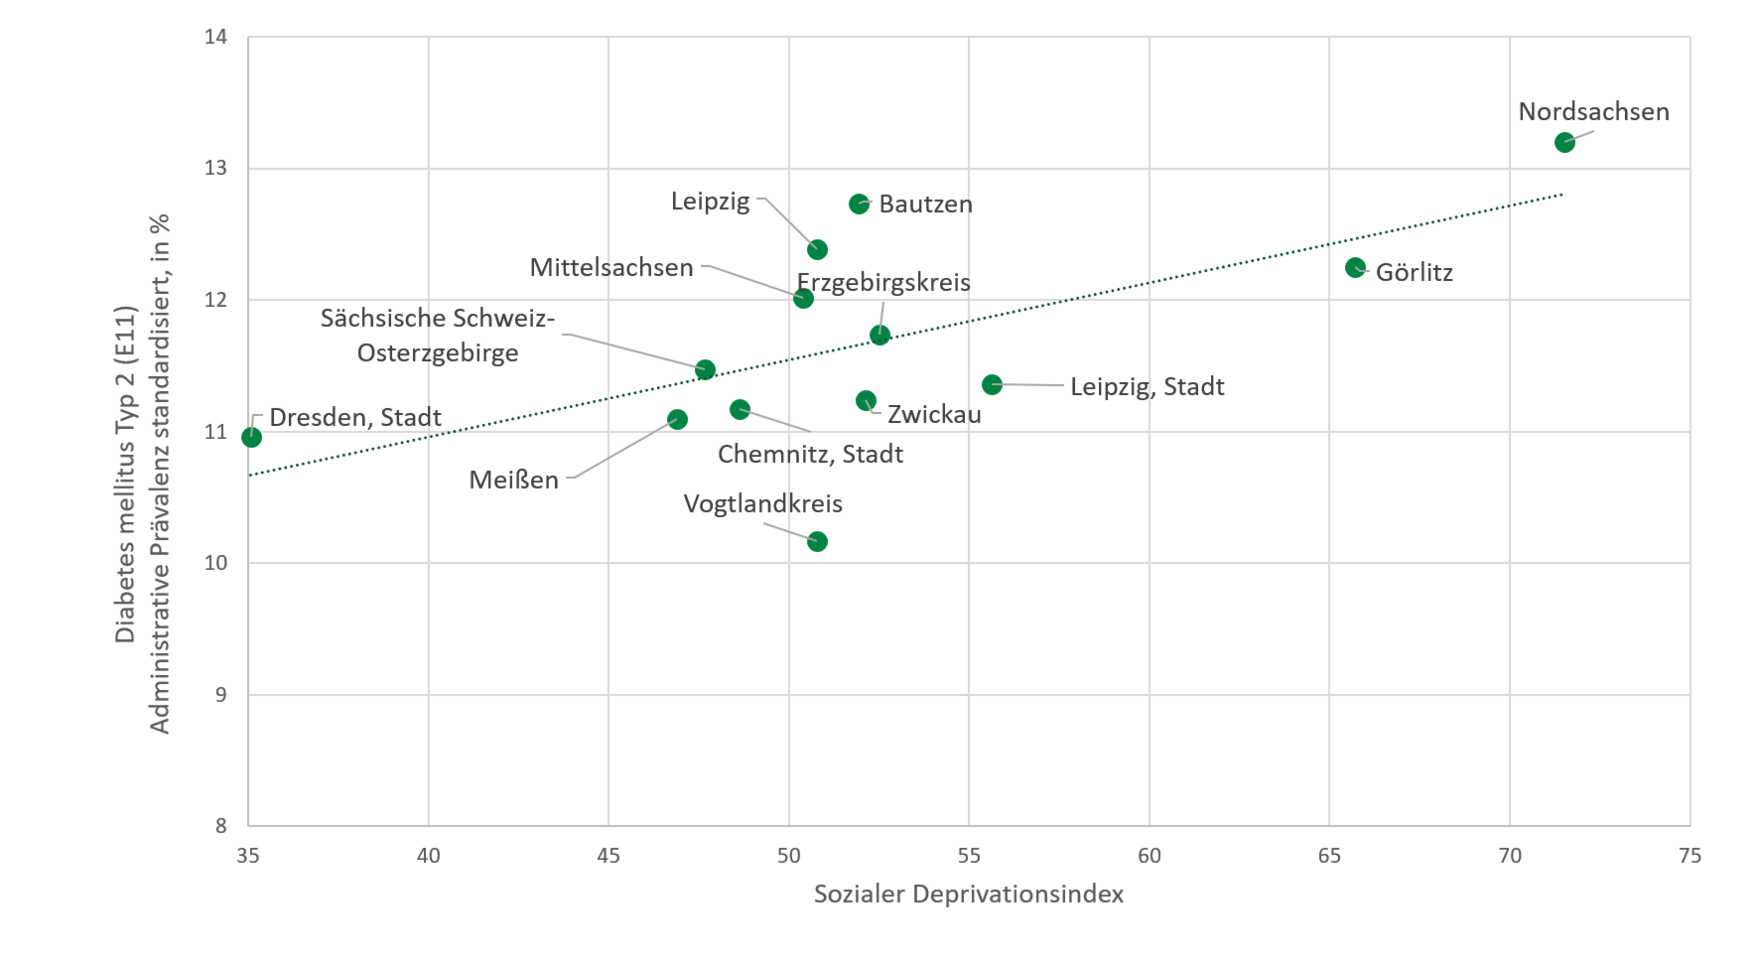 Die Grafik stellt den im Text beschriebenen Zusammenhang von sozialer Deprivation und Diabetes mellitus Typ 2 dar.